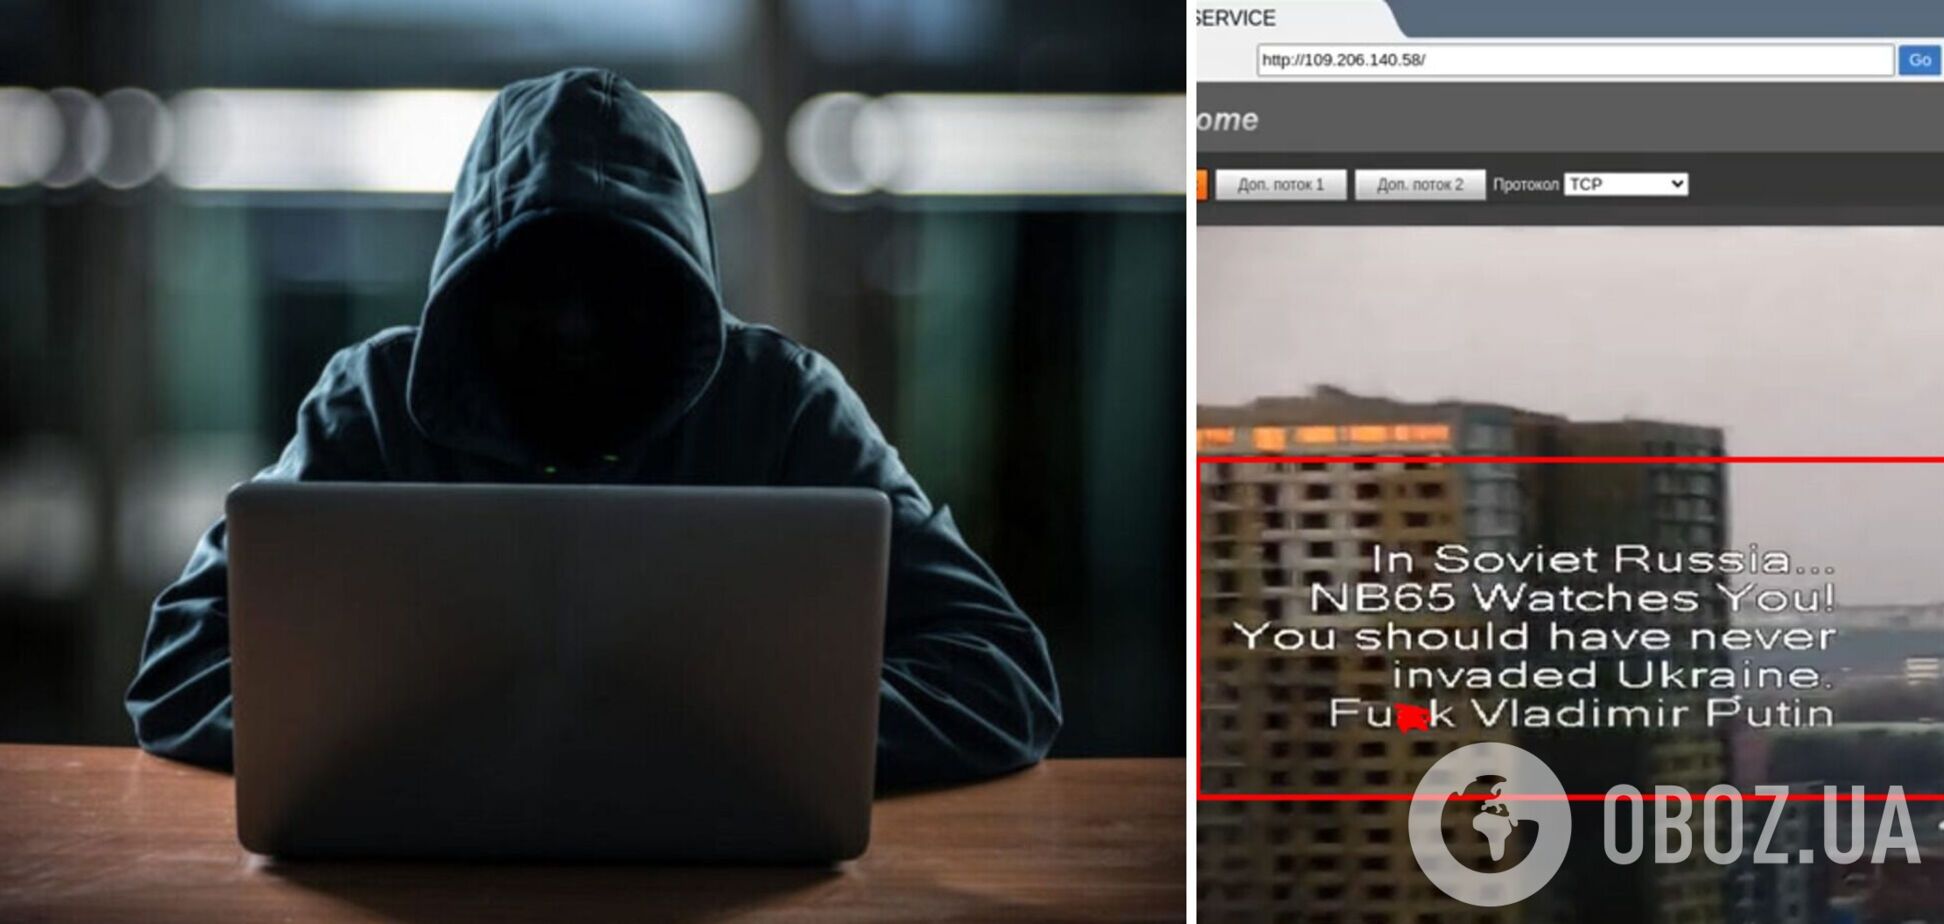 Хакери зламали систему відеоспостереження в Москві та залишили послання Путіну. Відео